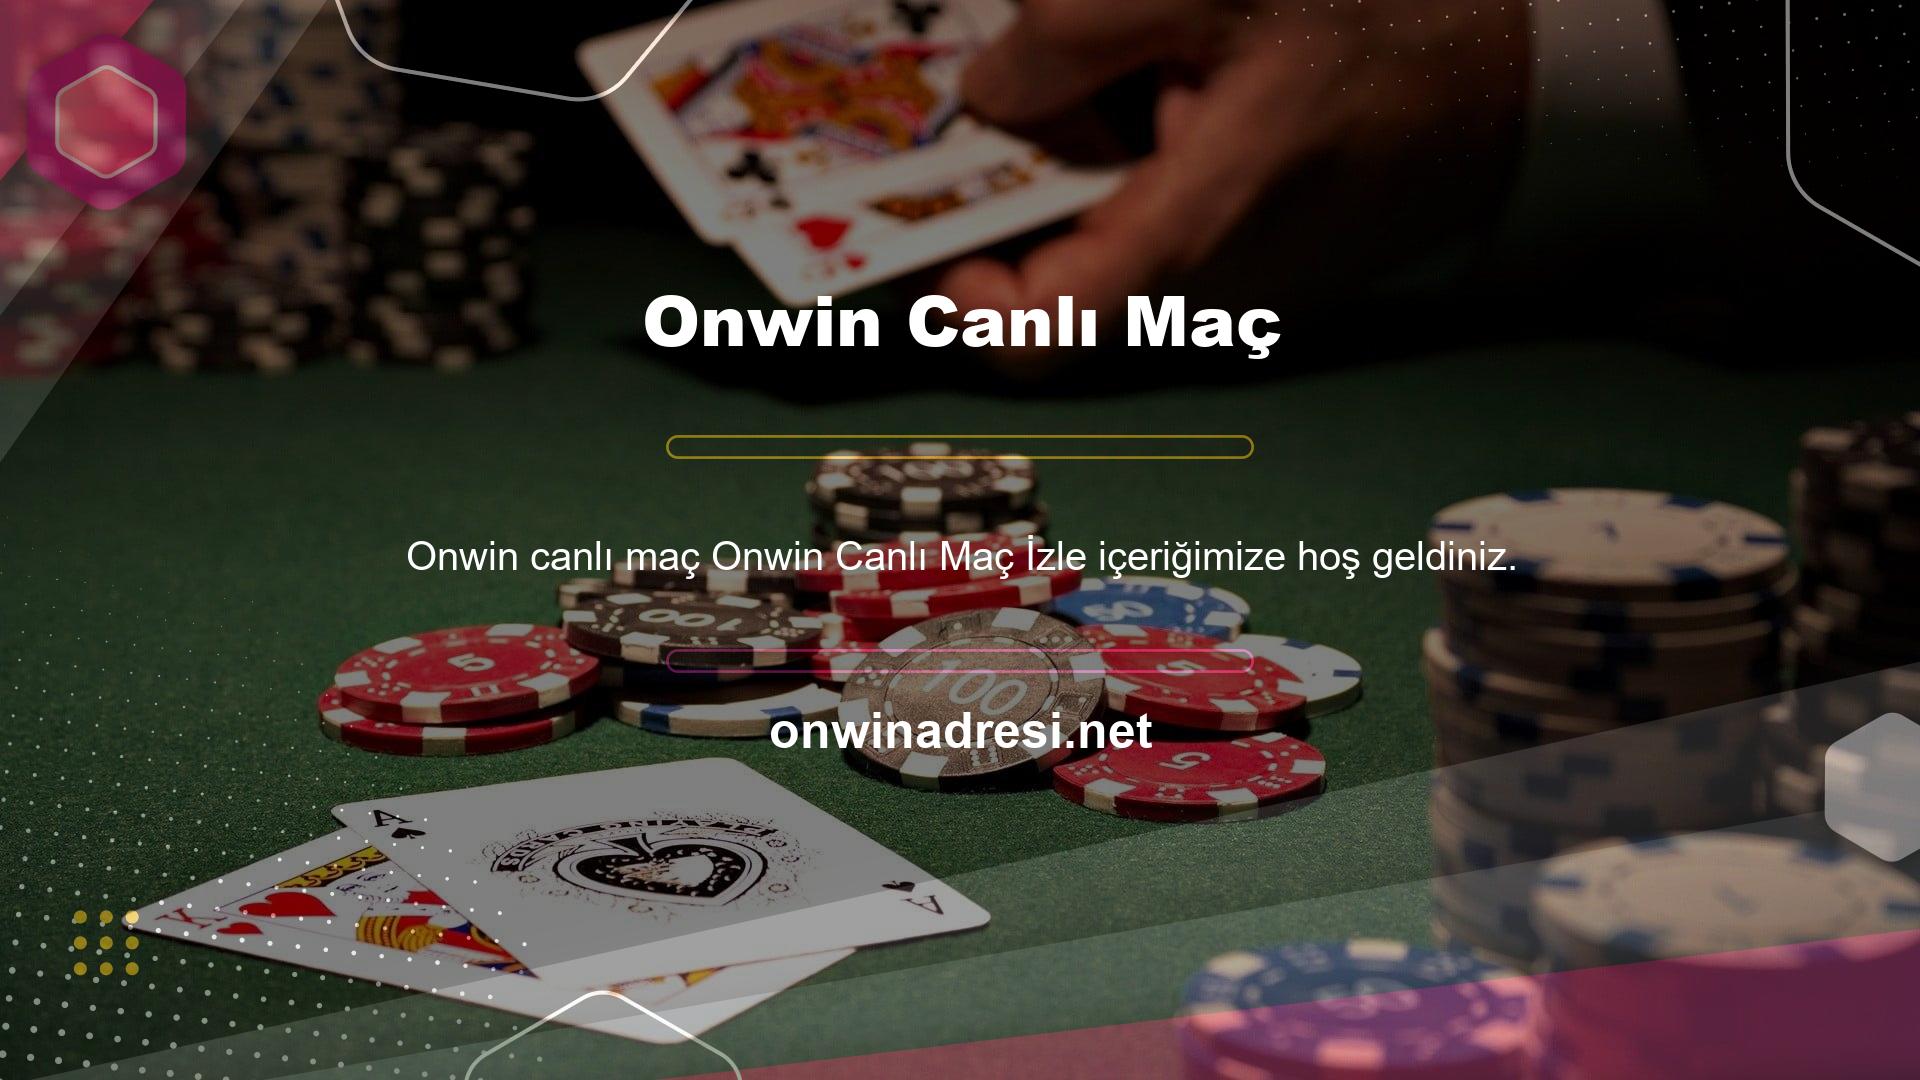 Onwin, kullanıcıların spor bahisleri oynamasına izin veren bir canlı yayın platformudur